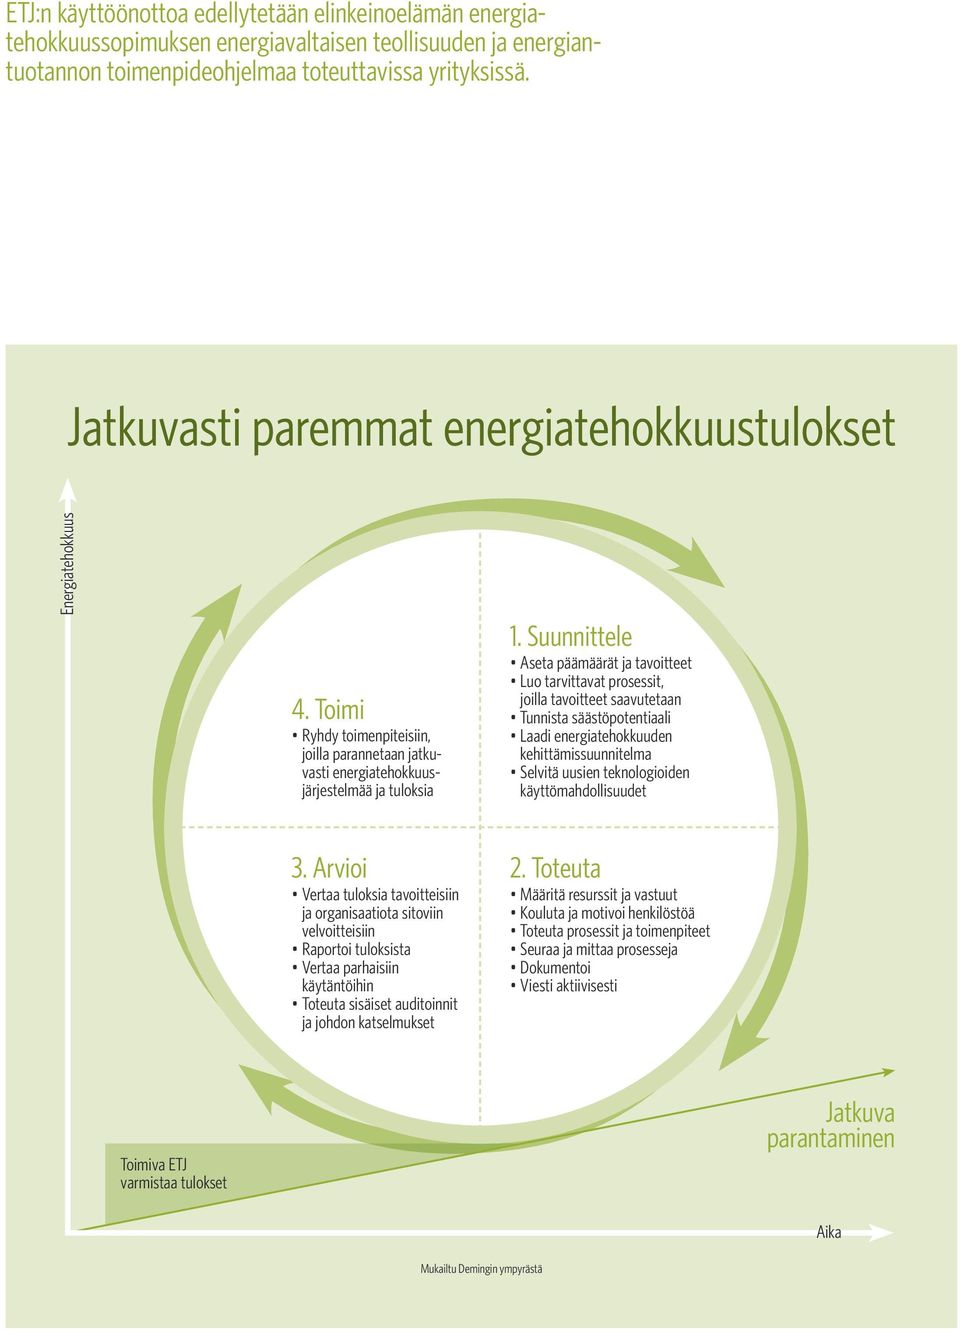 Suunnittele Aseta päämäärät ja tavoitteet Luo tarvittavat prosessit, joilla tavoitteet saavutetaan Tunnista säästöpotentiaali Laadi energiatehokkuuden kehittämissuunnitelma Selvitä uusien